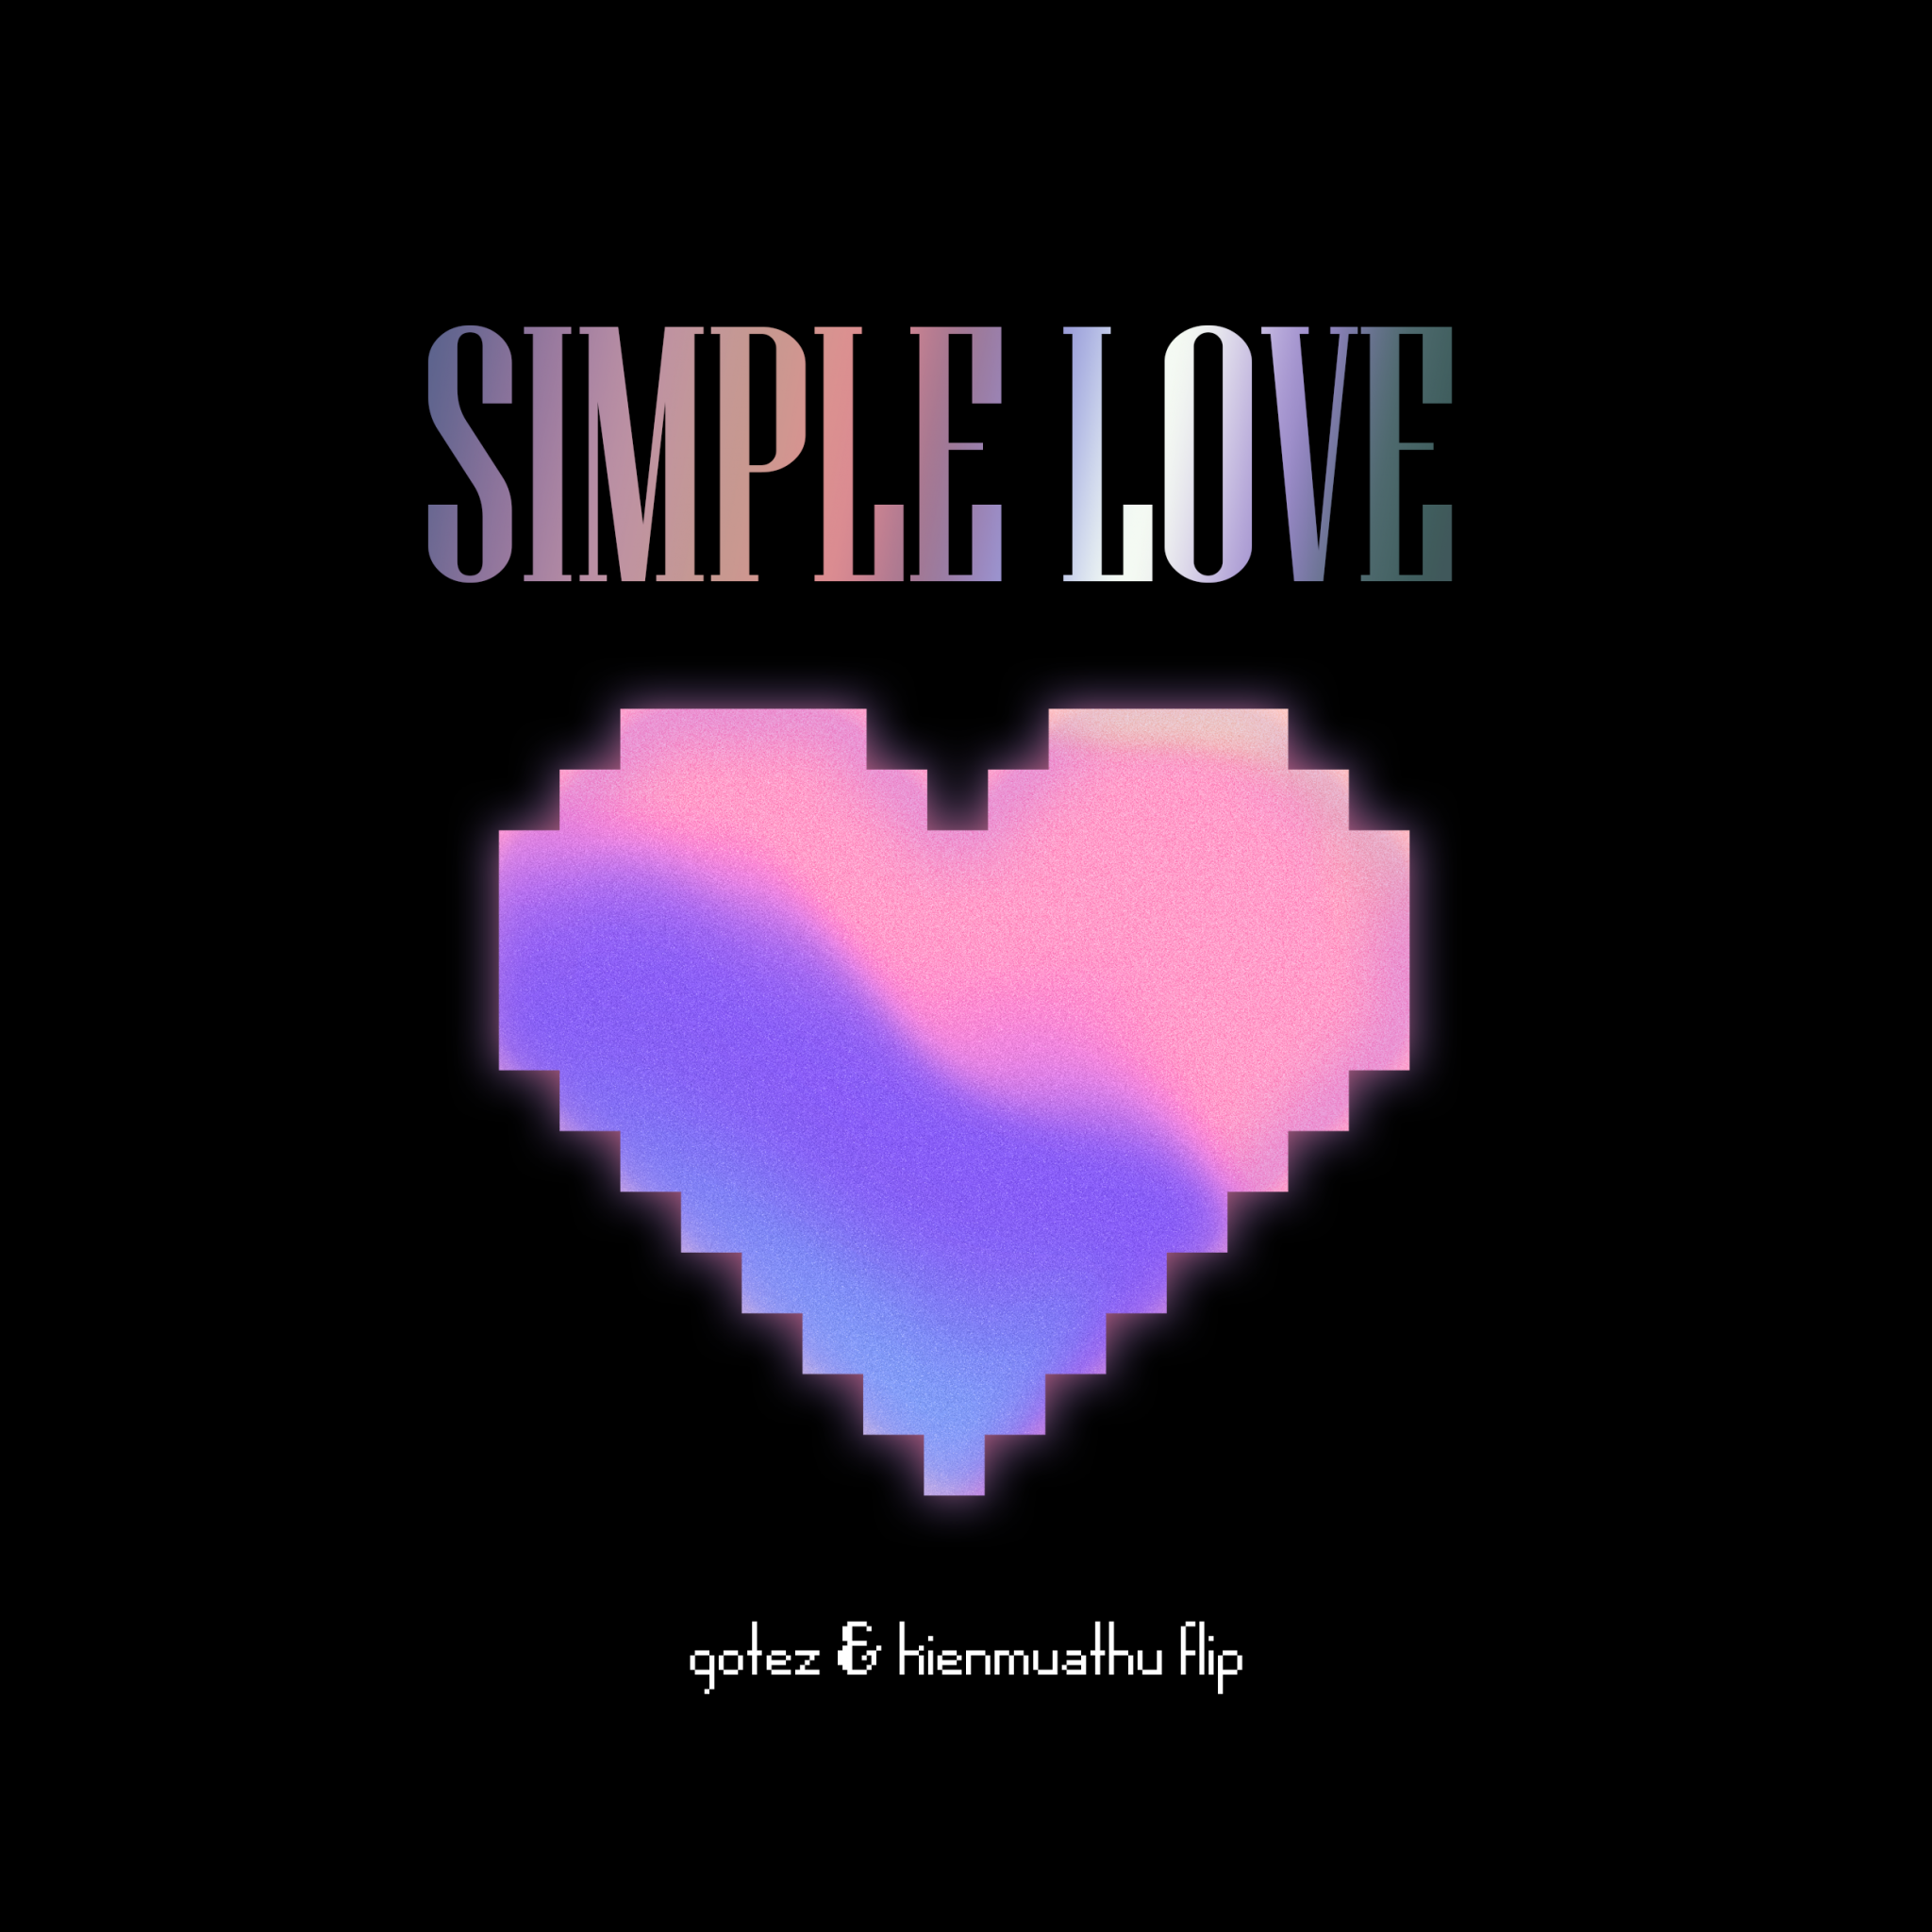 GOTEZ thay đổi diện mạo cho Simple Love hợp tác cùng Kienmuathu [House]